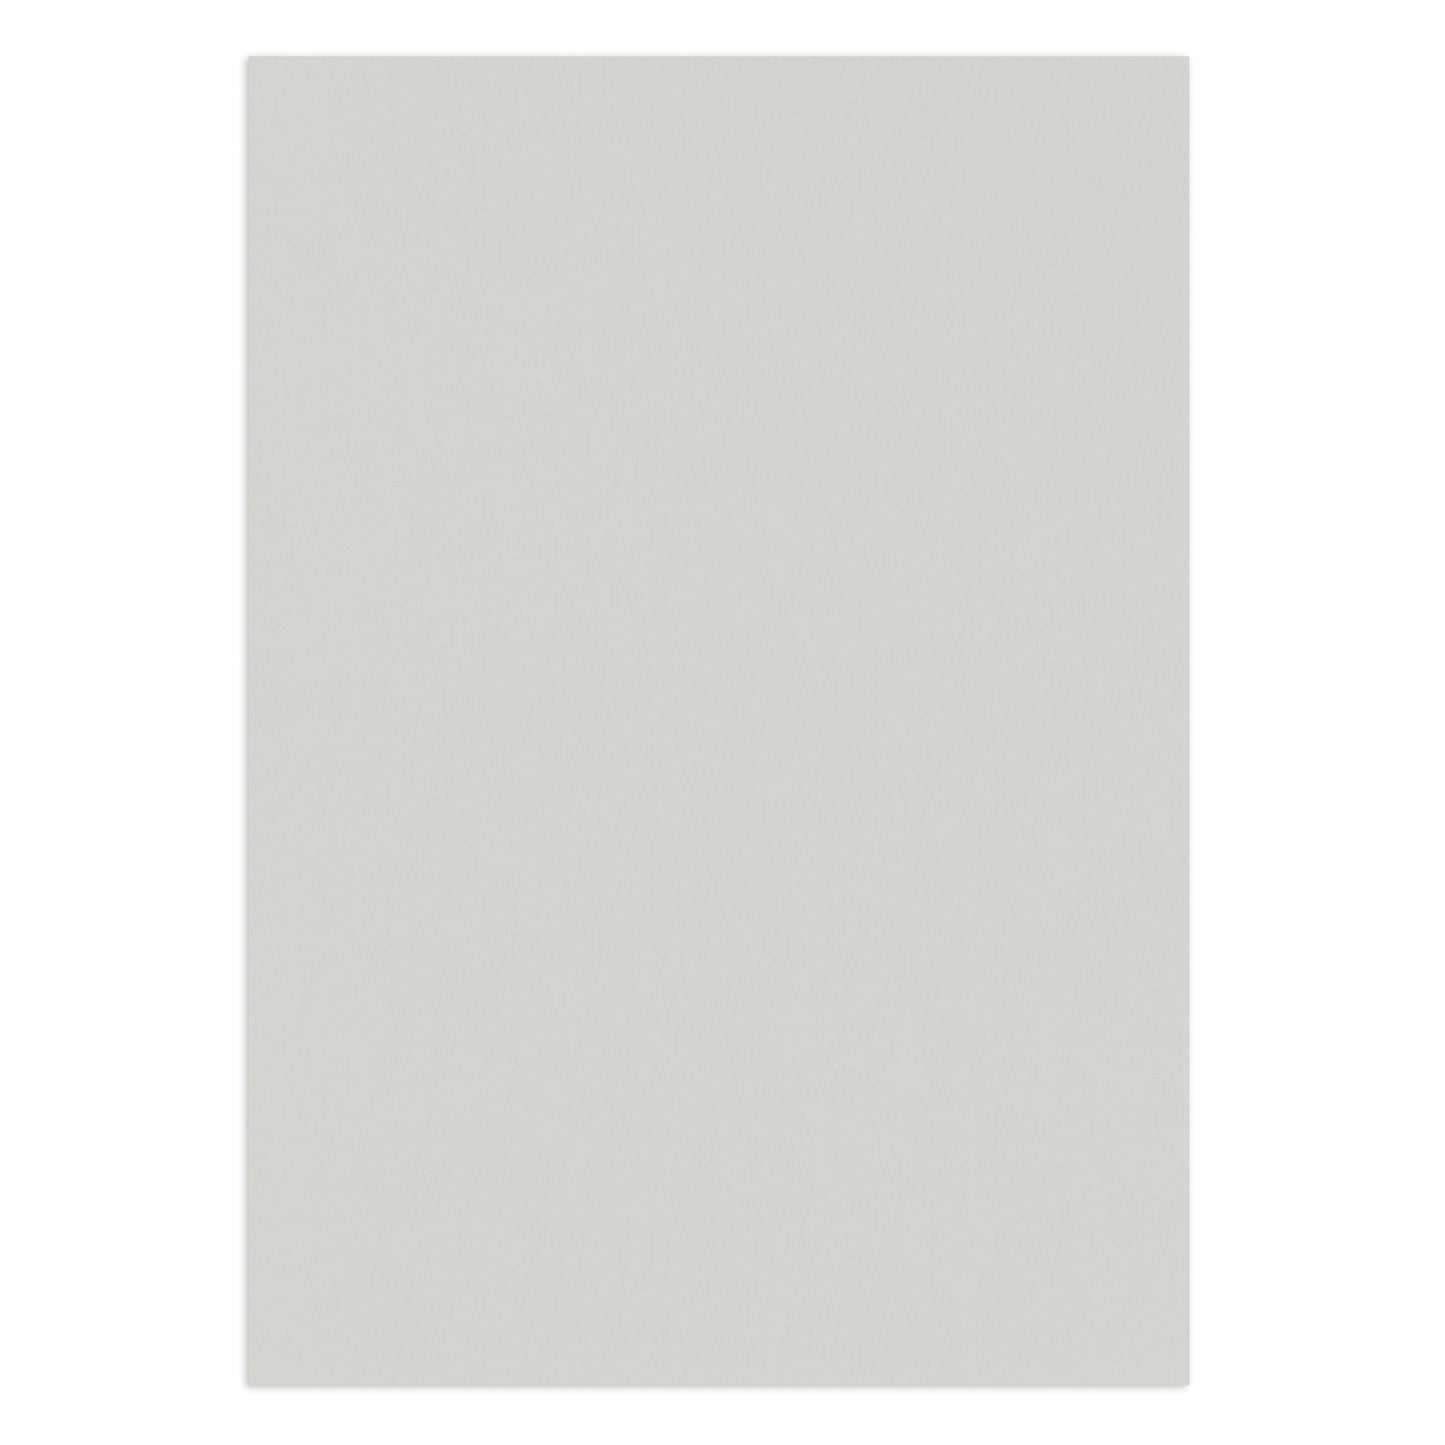 Olin Colours Grey, A4 120g